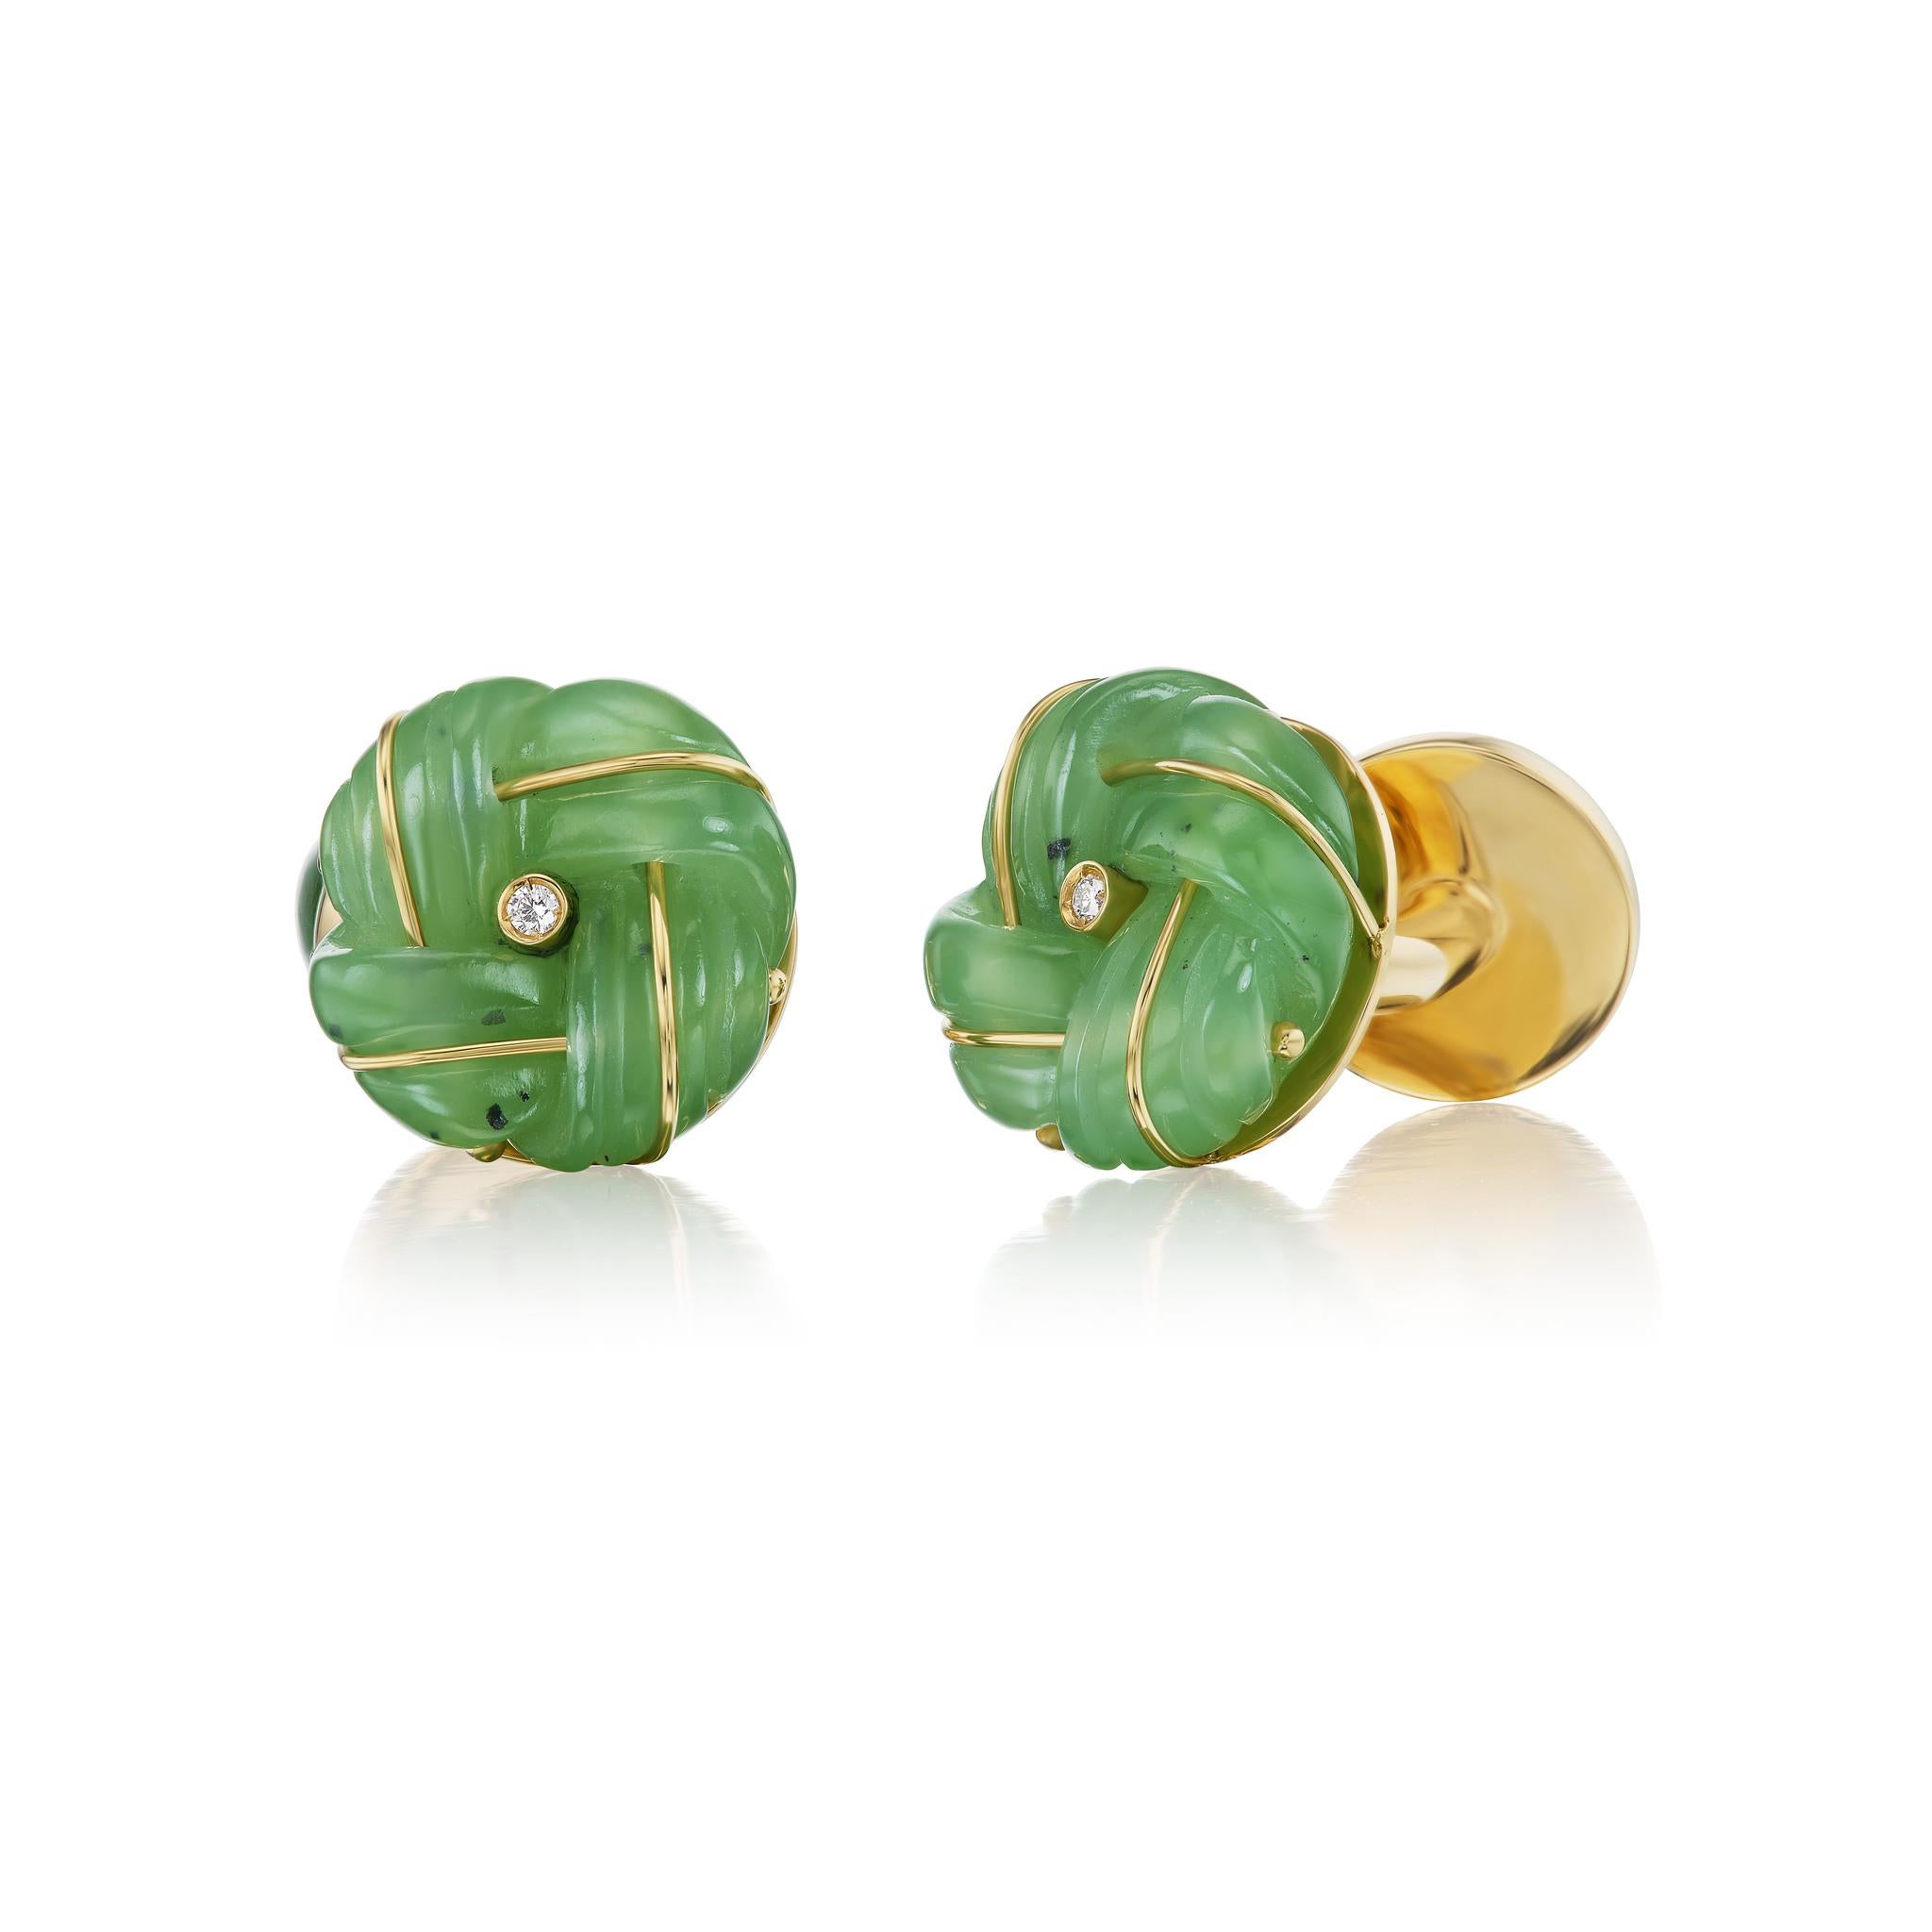 Le classique bouton de manchette à nœud, réinterprété en jade sculpté et discrètement rehaussé d'or et de diamants.  

Les boutons de manchette à nœud remontent au début du XXe siècle et les originaux ont été réalisés en soie par le fabricant de